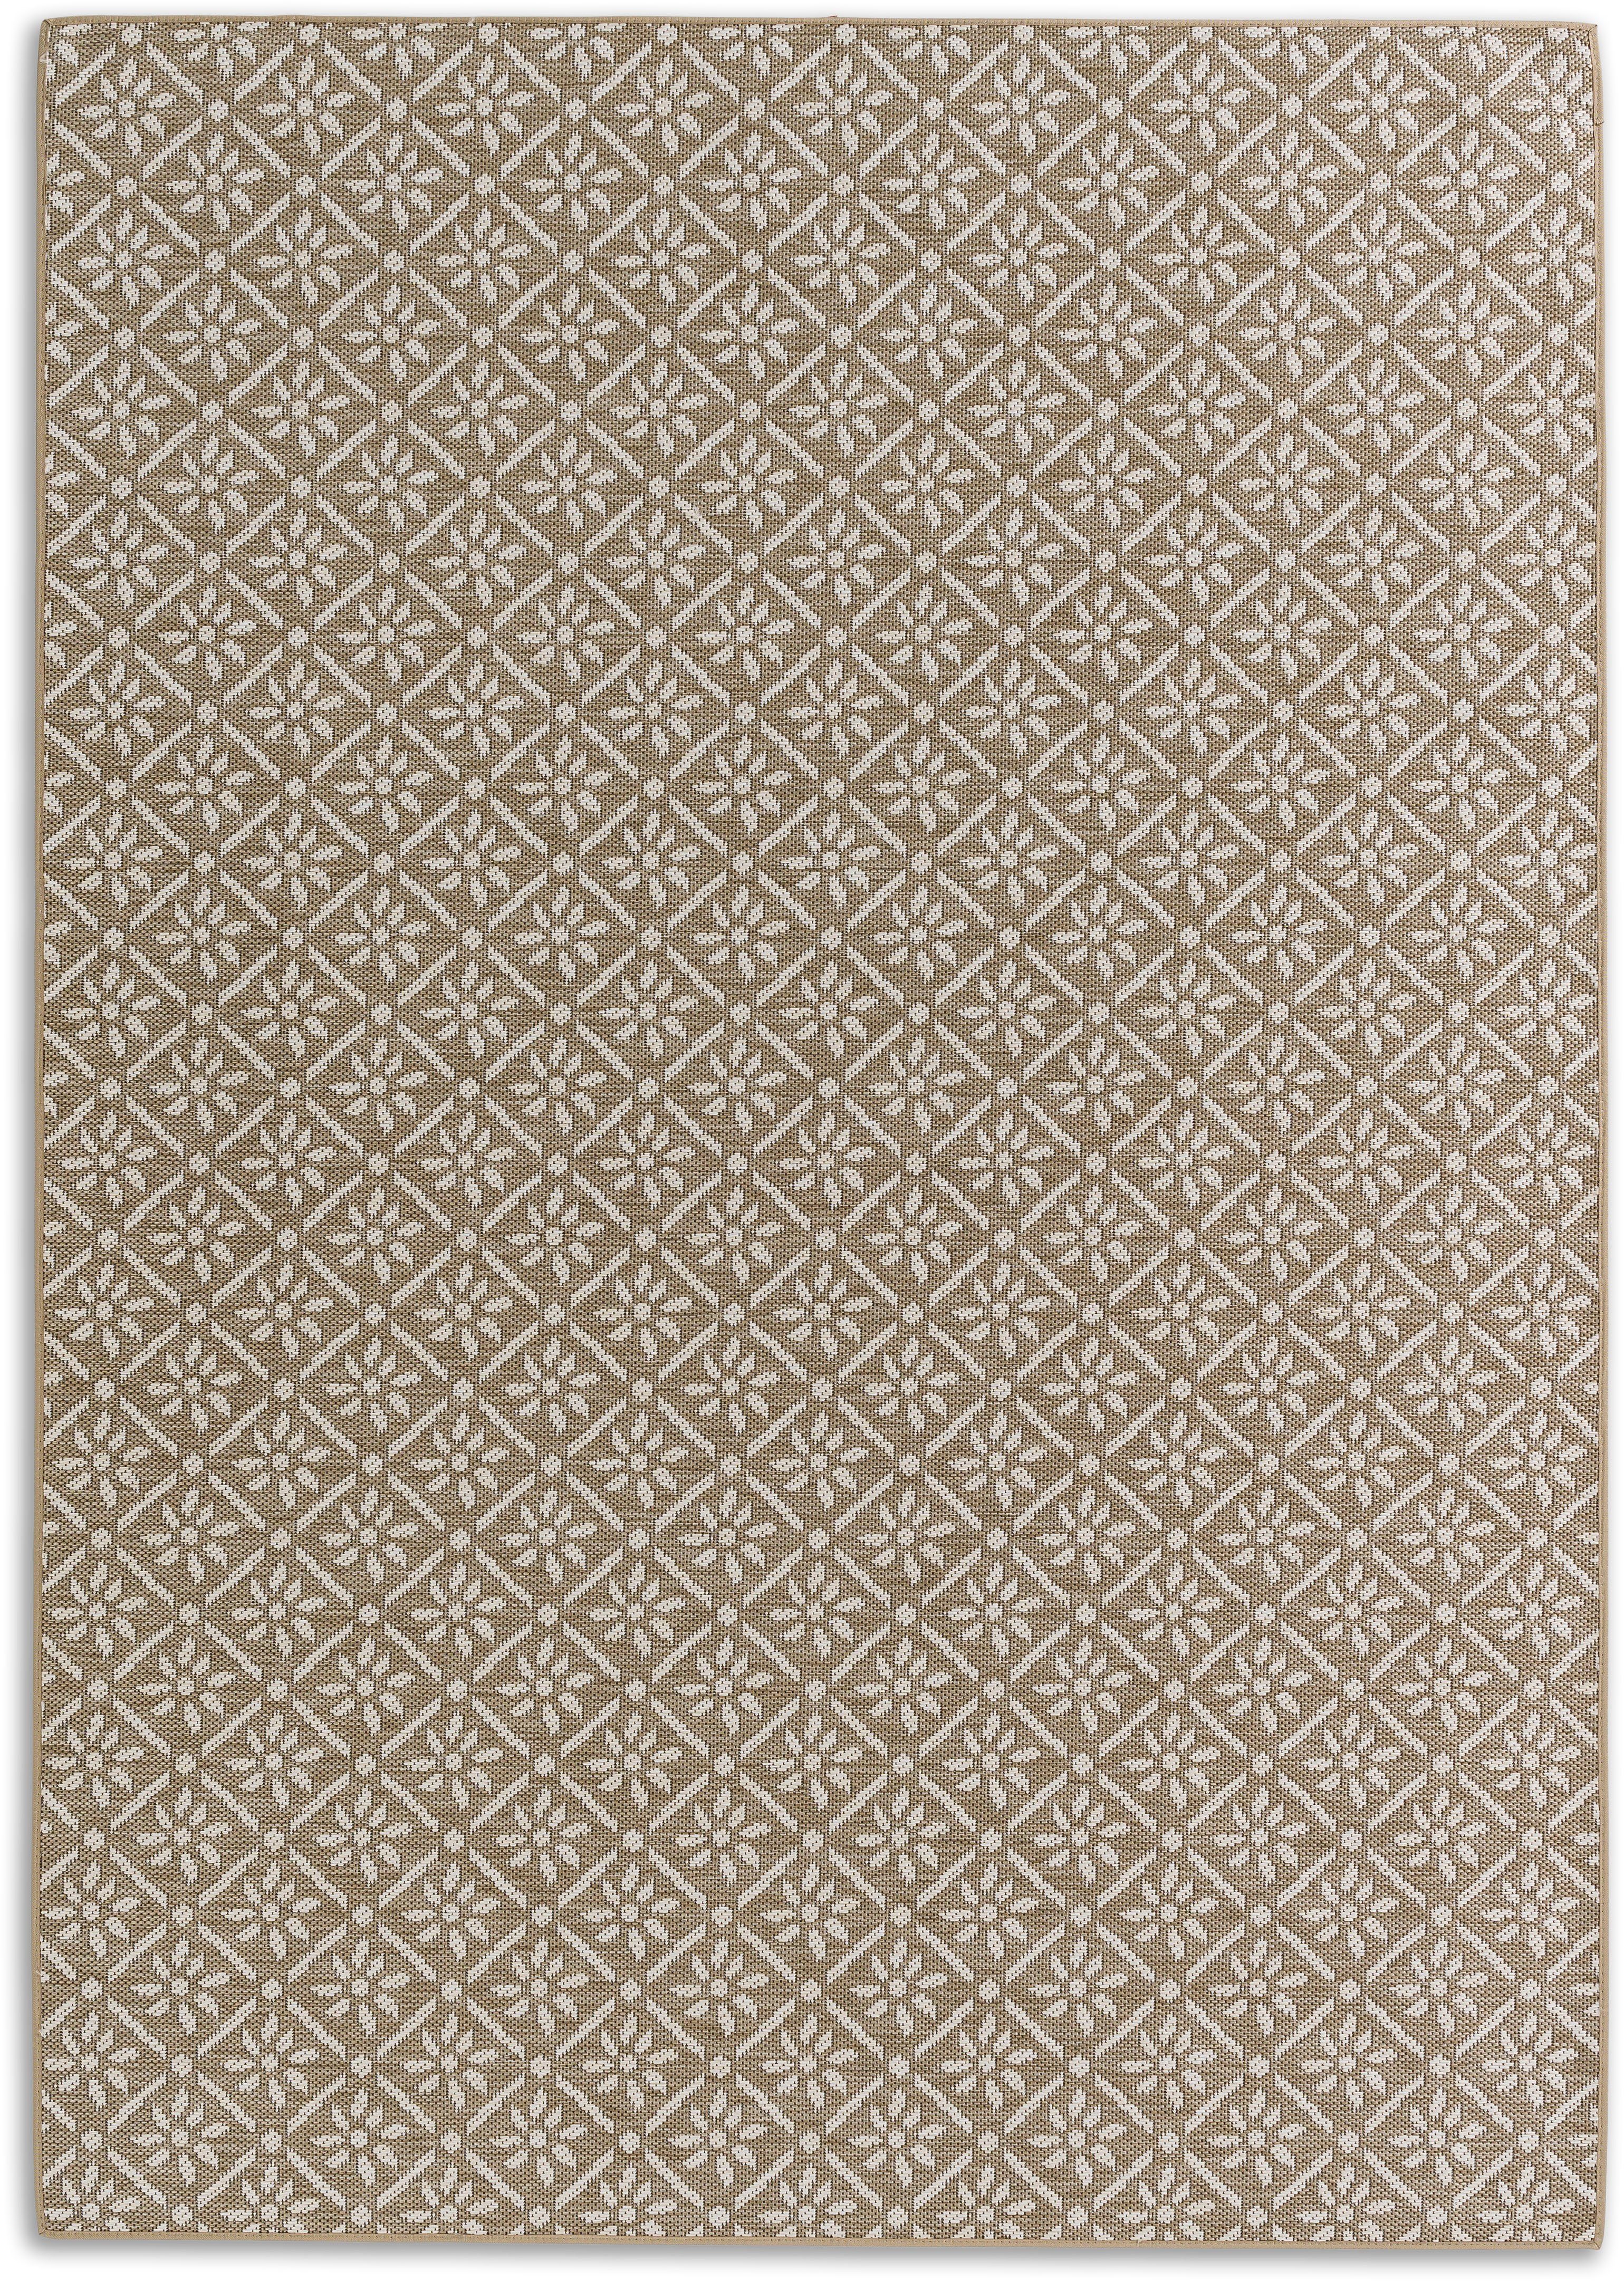 Teppich Parkland 6351 221, SCHÖNER WOHNEN-Kollektion, rechteckig, Höhe: 5 mm,  In- und Outdoor geeignet, eleganter Flachflorteppich